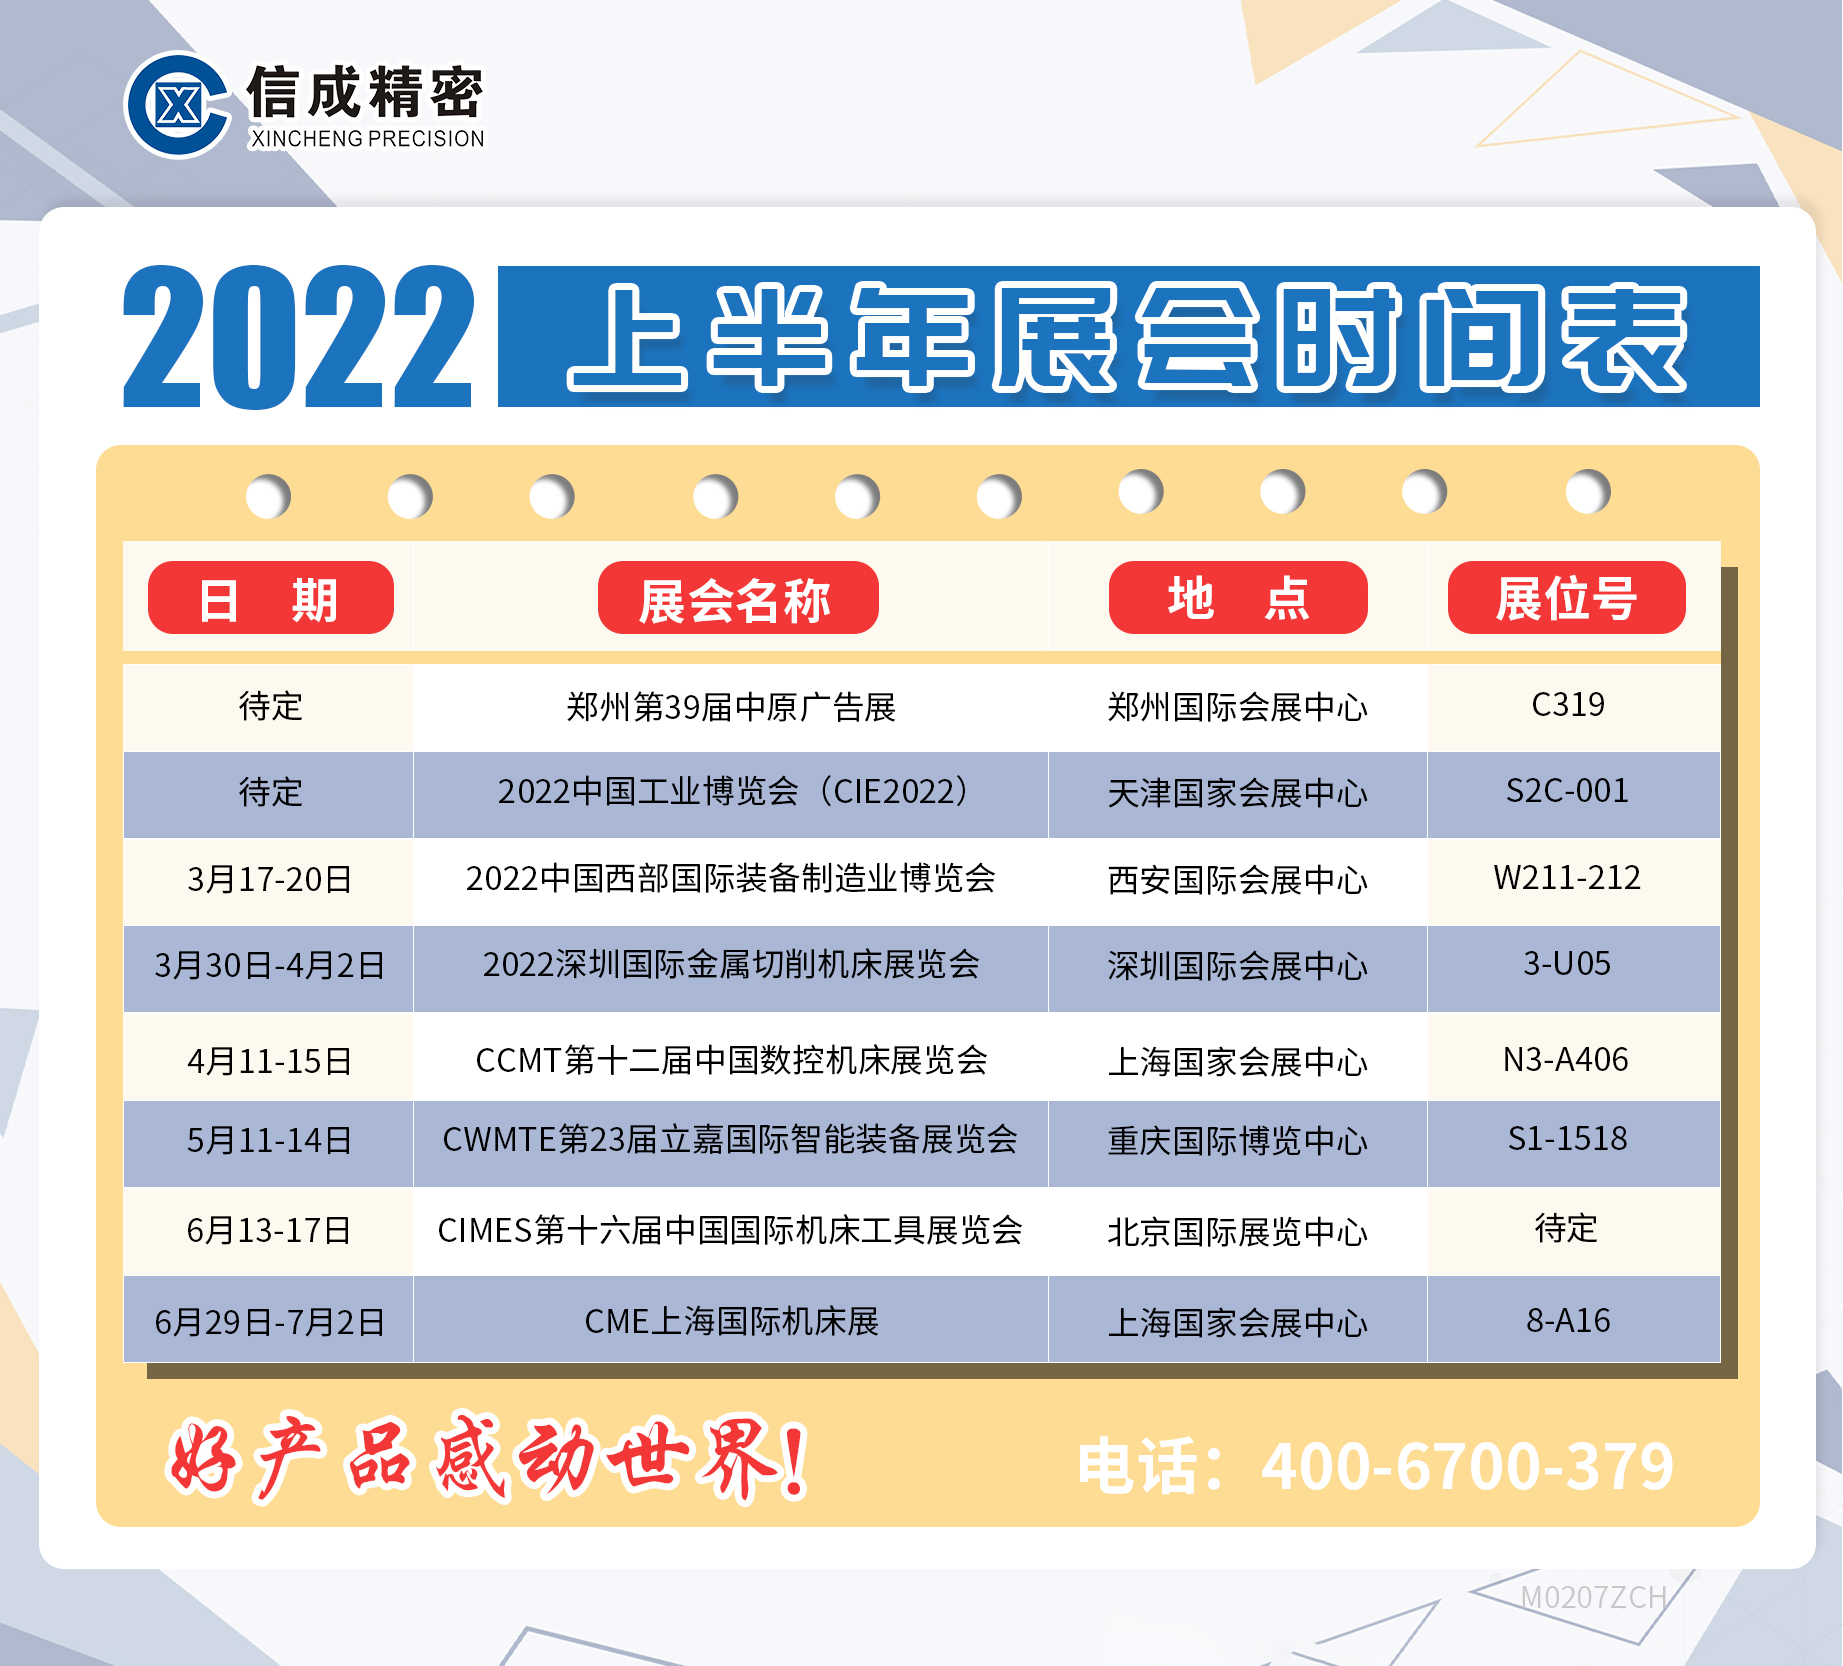 洛阳信成2022年上半年展会安排时间表